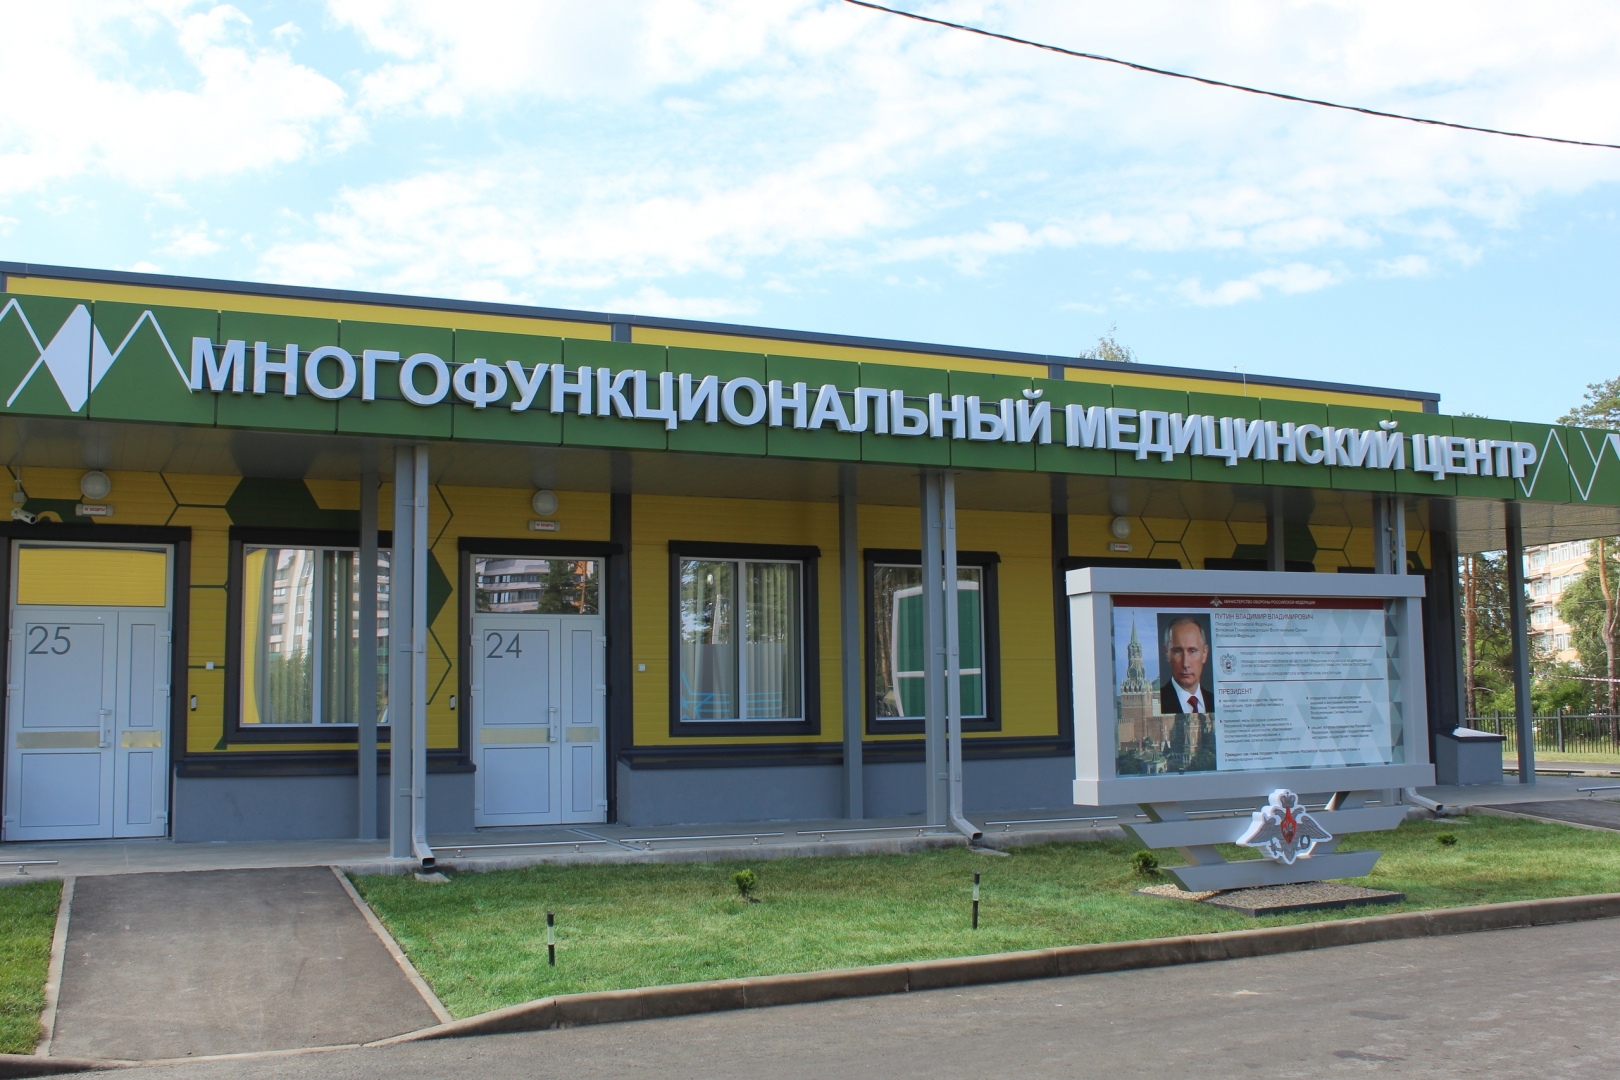 Воронежцы проголосовали за расширение инфекционной больницы за счет лестного фонда - фото 1